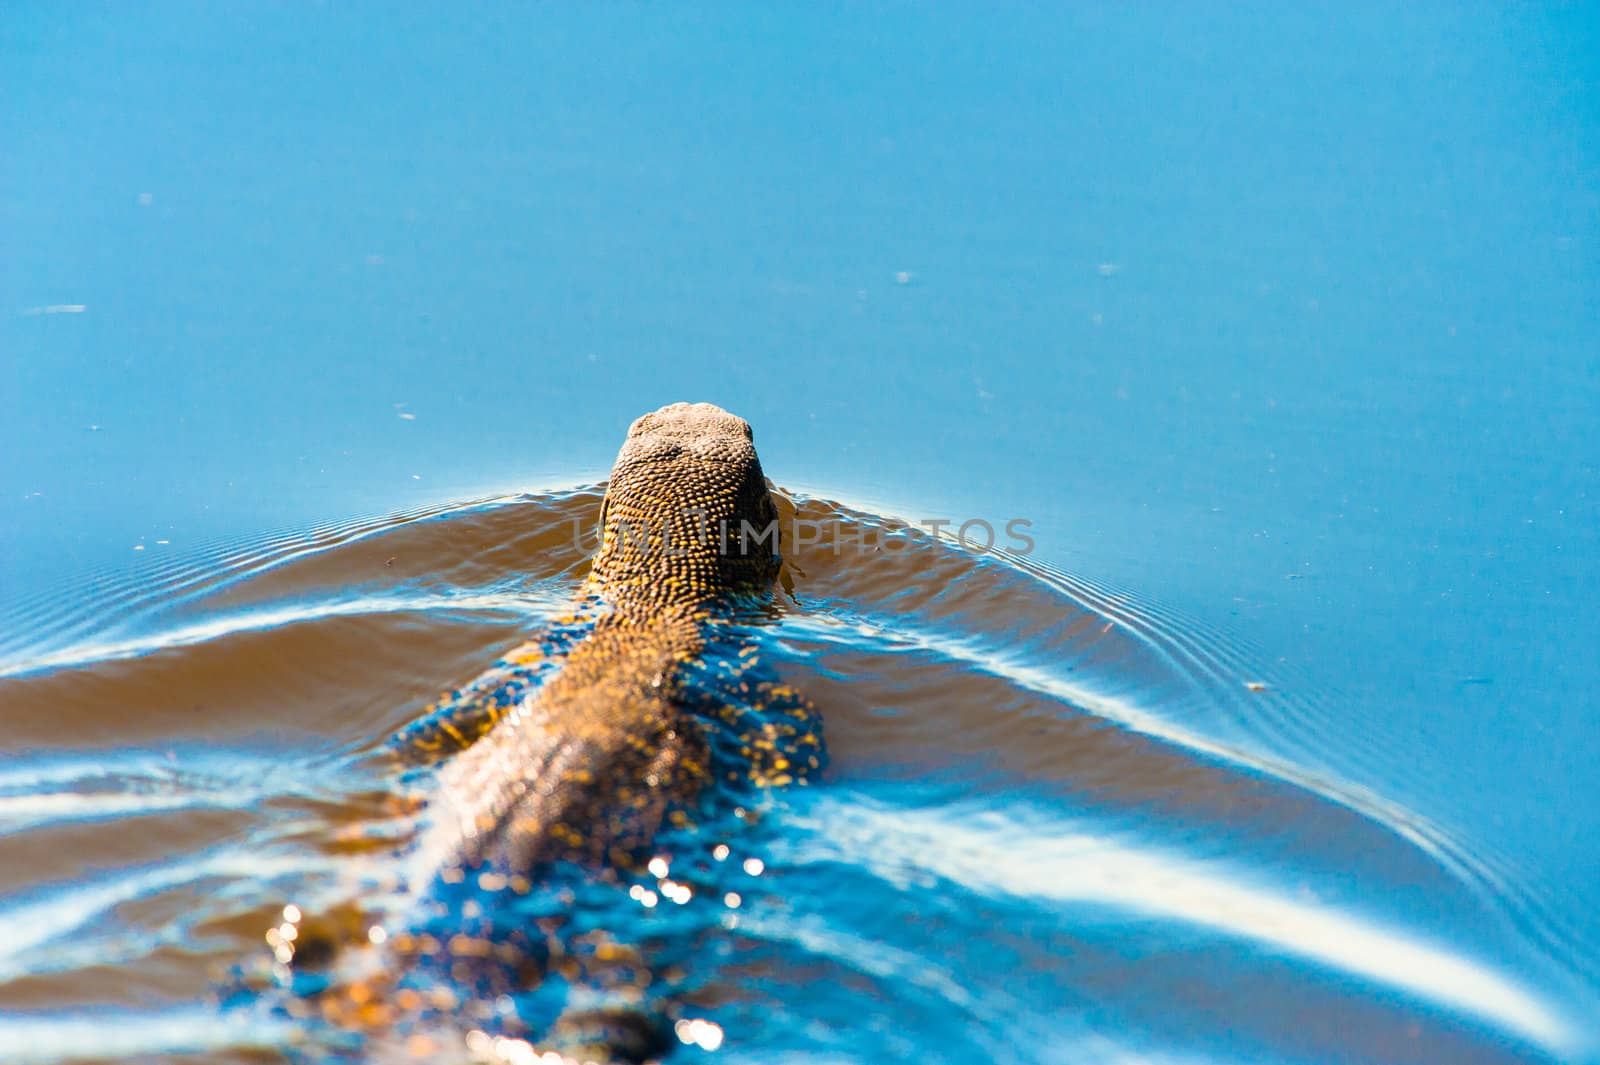 Swimming monitor lizard by edan